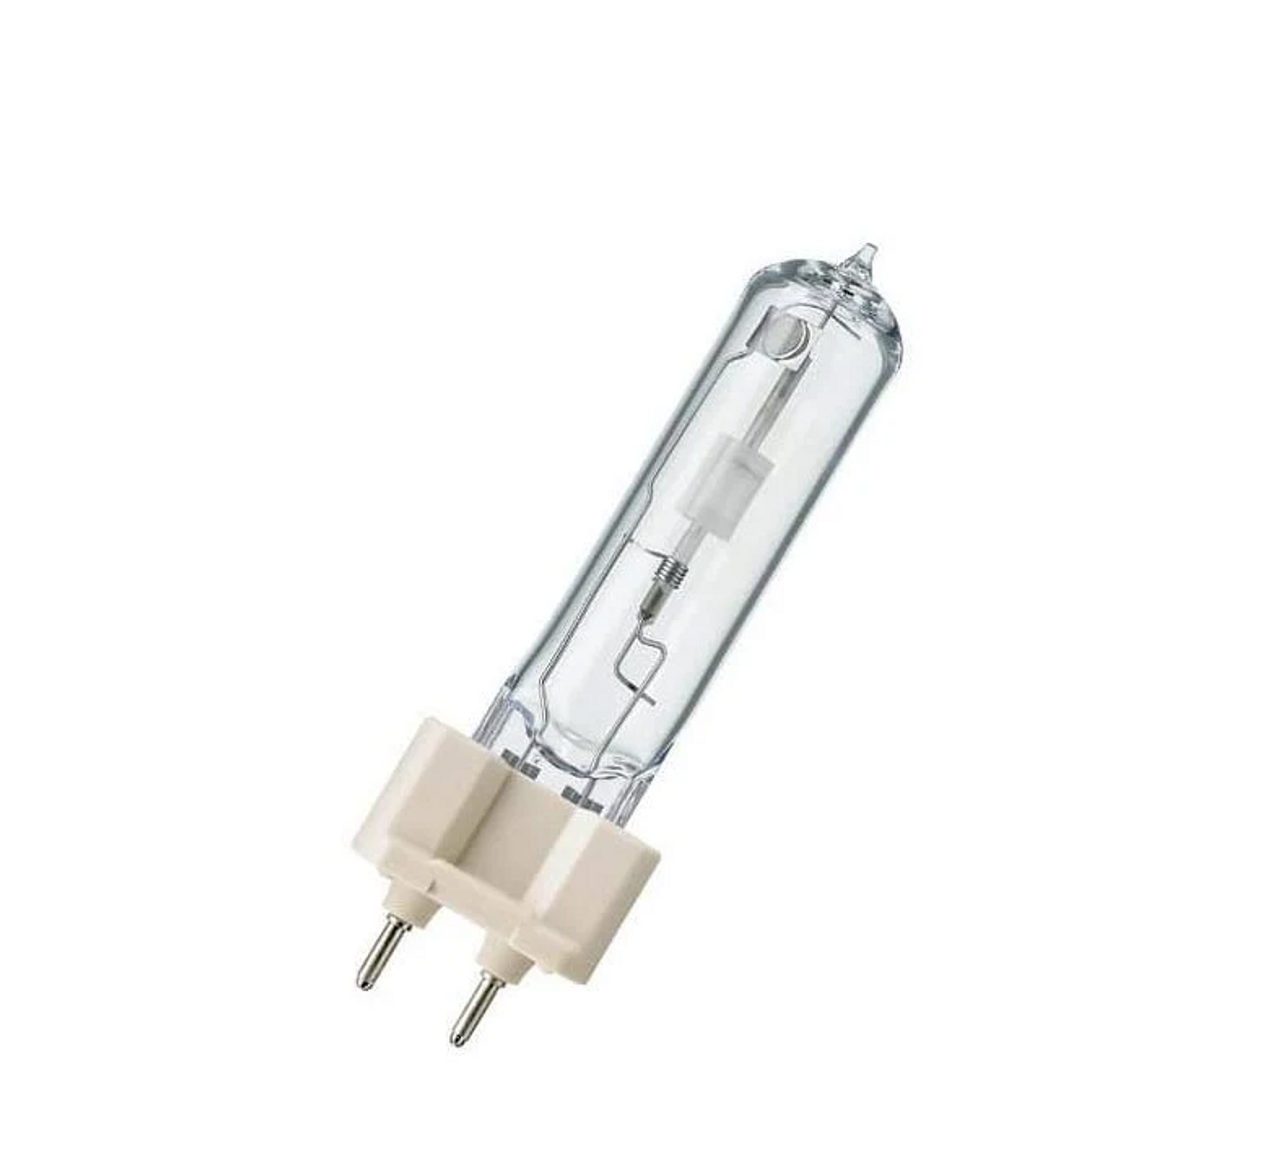 CDM70/T6/830 Philips (223370) 70W Metal Halide Pulse Start Bi-pin Lamp